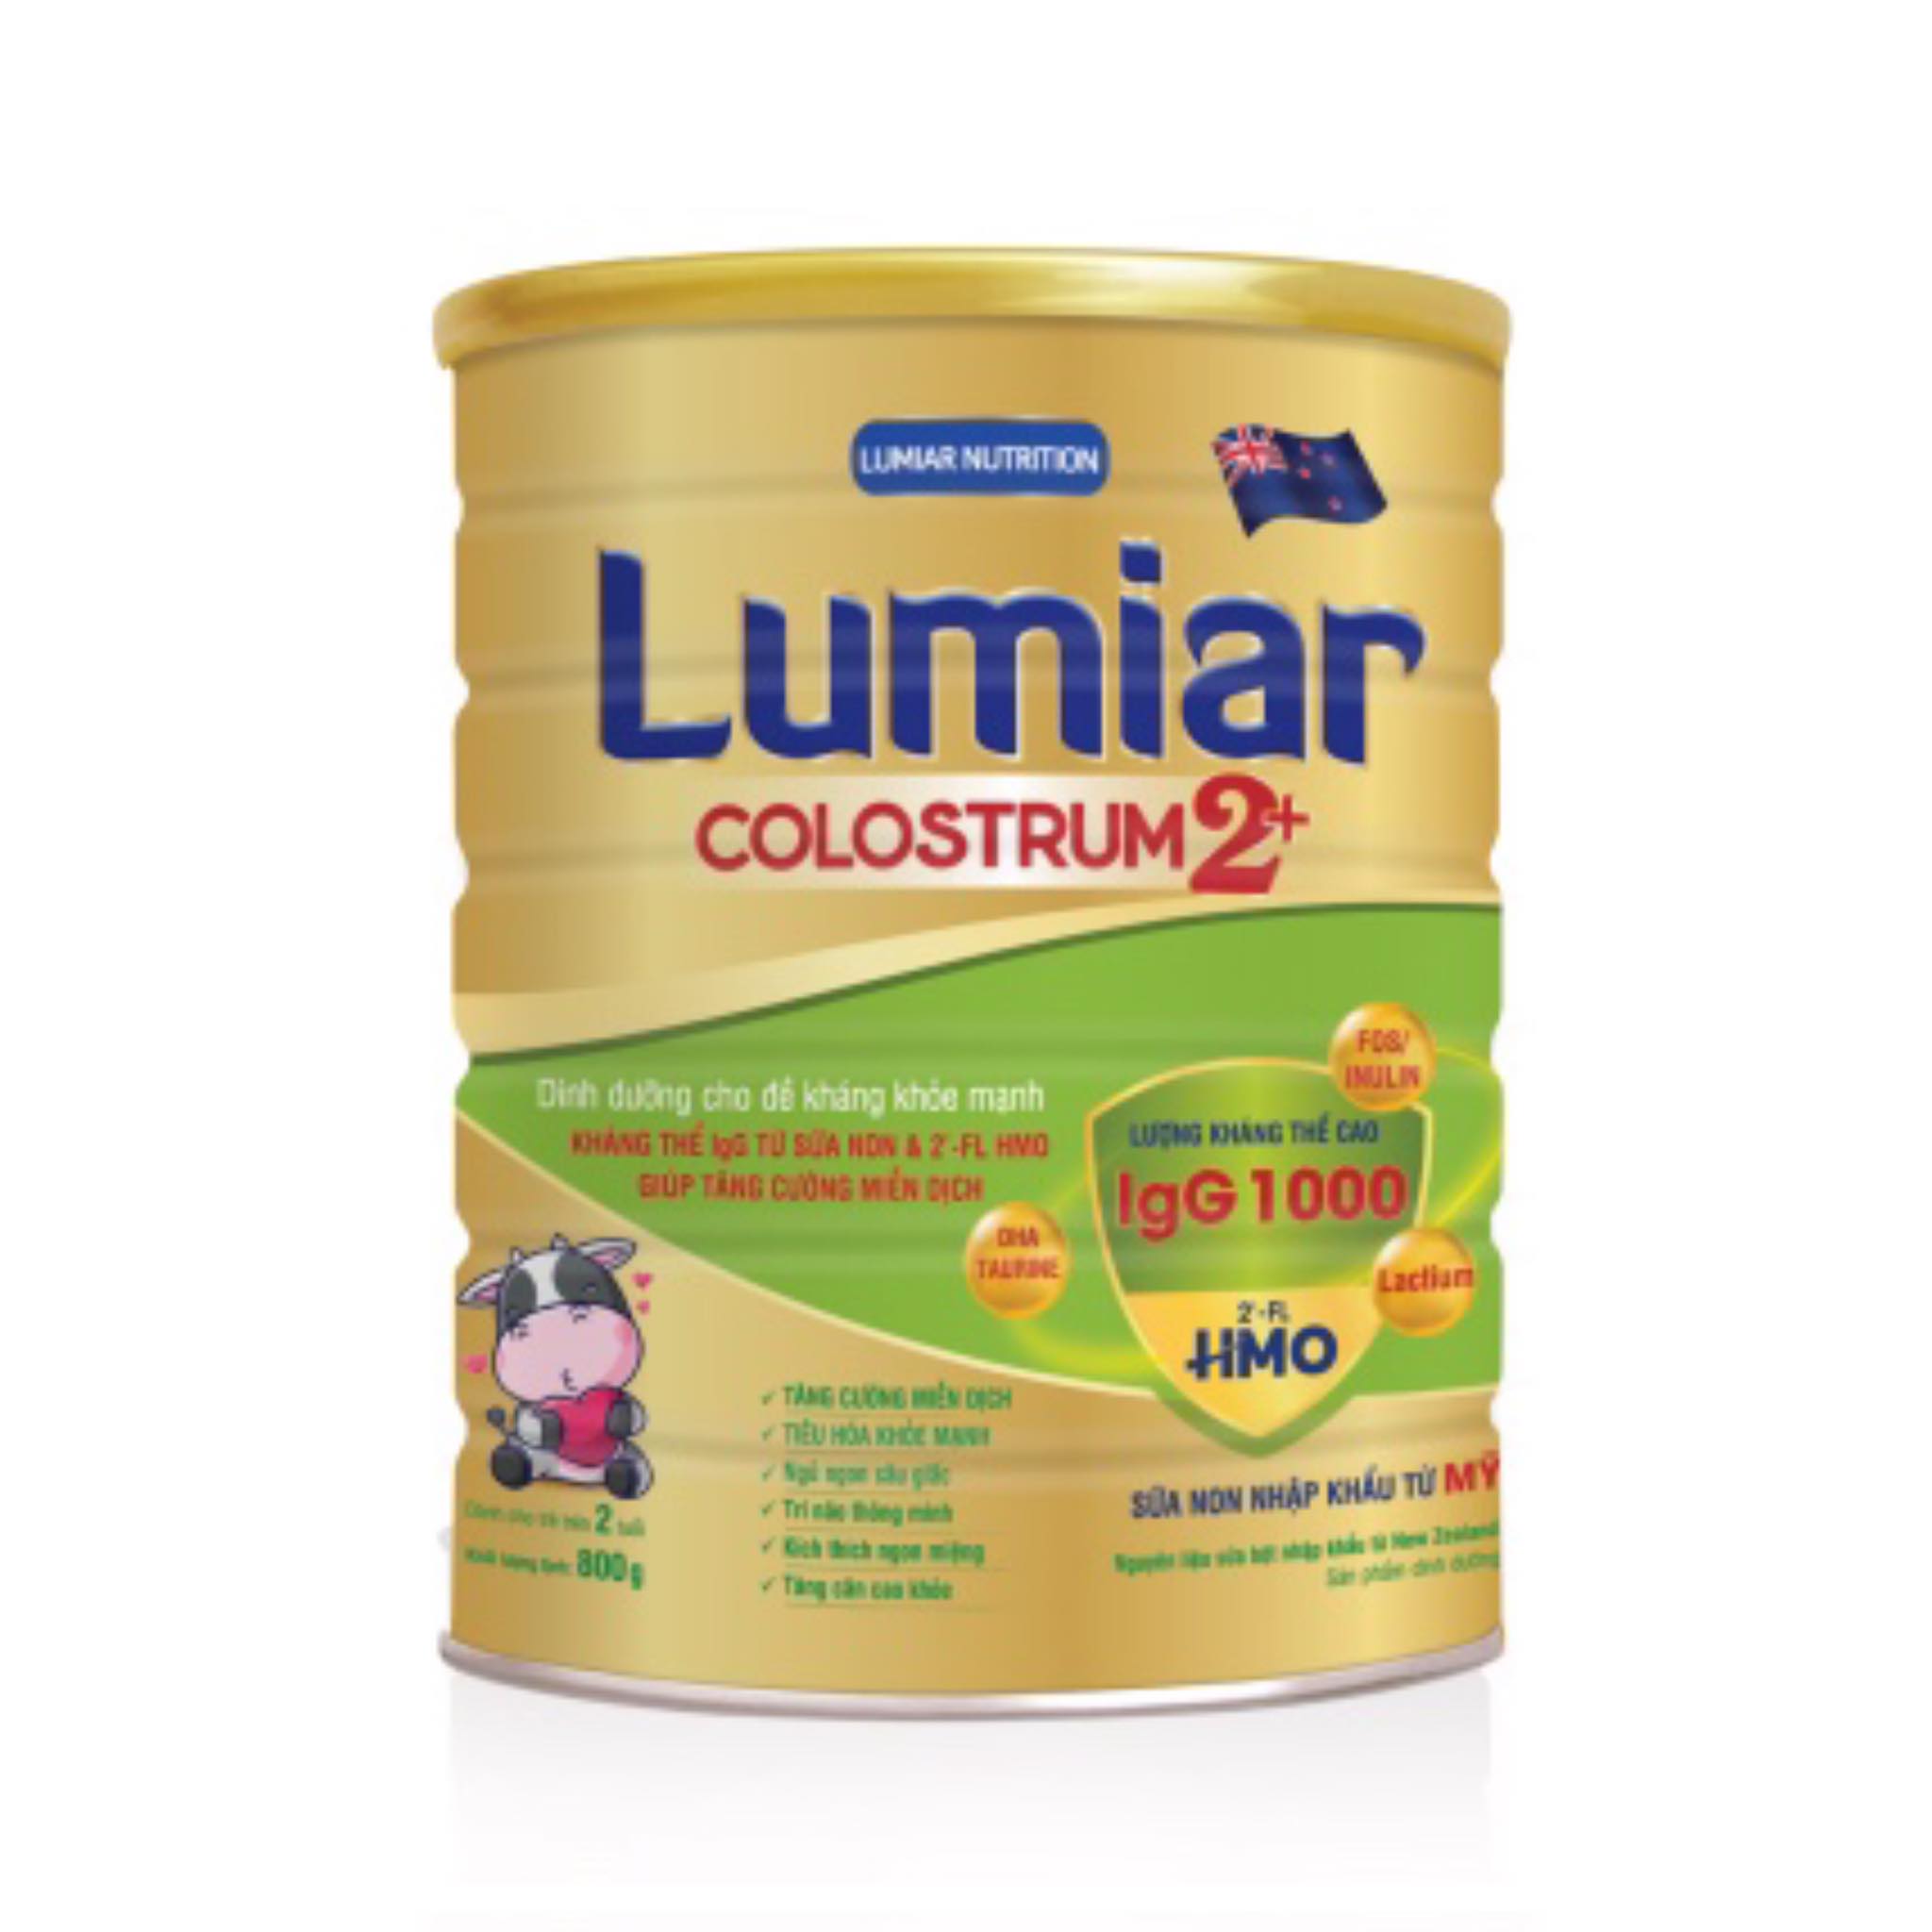 Sữa bột Lumiar Colostrum 2+ 800g - Dinh dưỡng cho đề kháng khỏe mạnh, kháng thể IgG từ sữa non &amp; 2′-FL HMO giúp tăng cường miễn dịch.